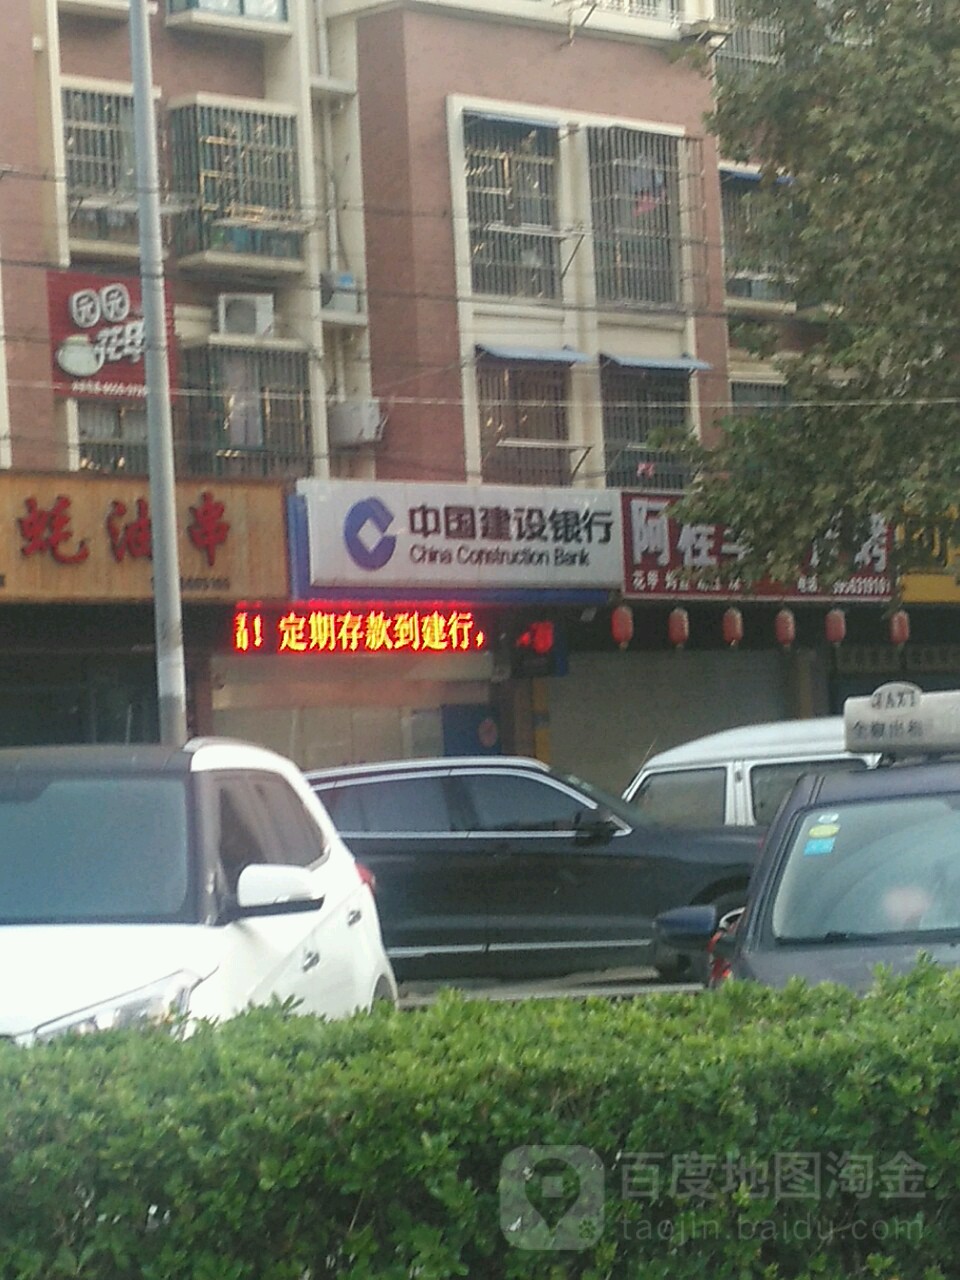 中國建設銀行ATM(滁州明光路支行)